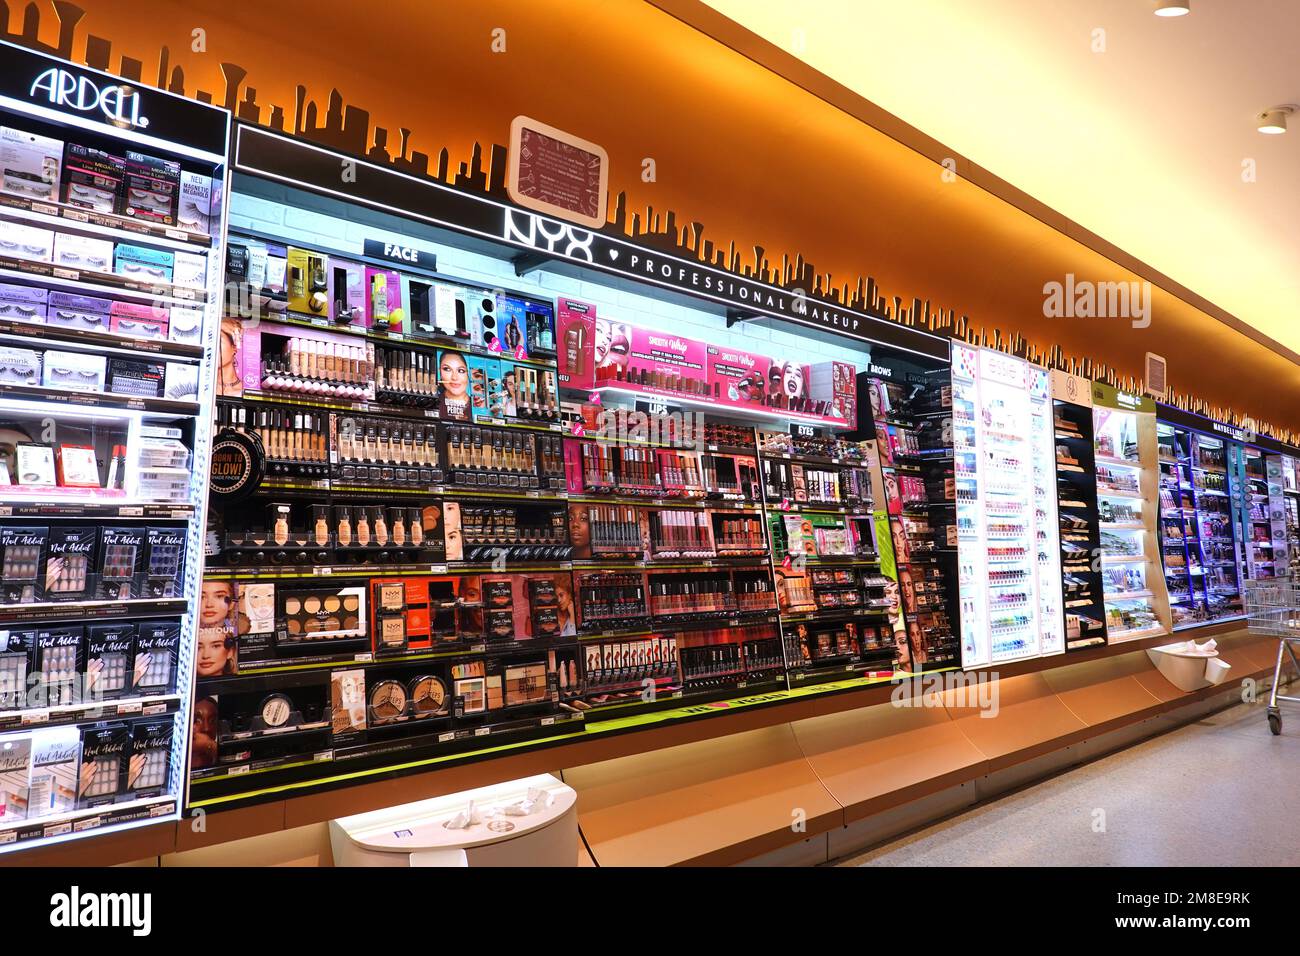 Kosmetik-Abteilung in einem DM-Drogeriemarkt Stock Photo